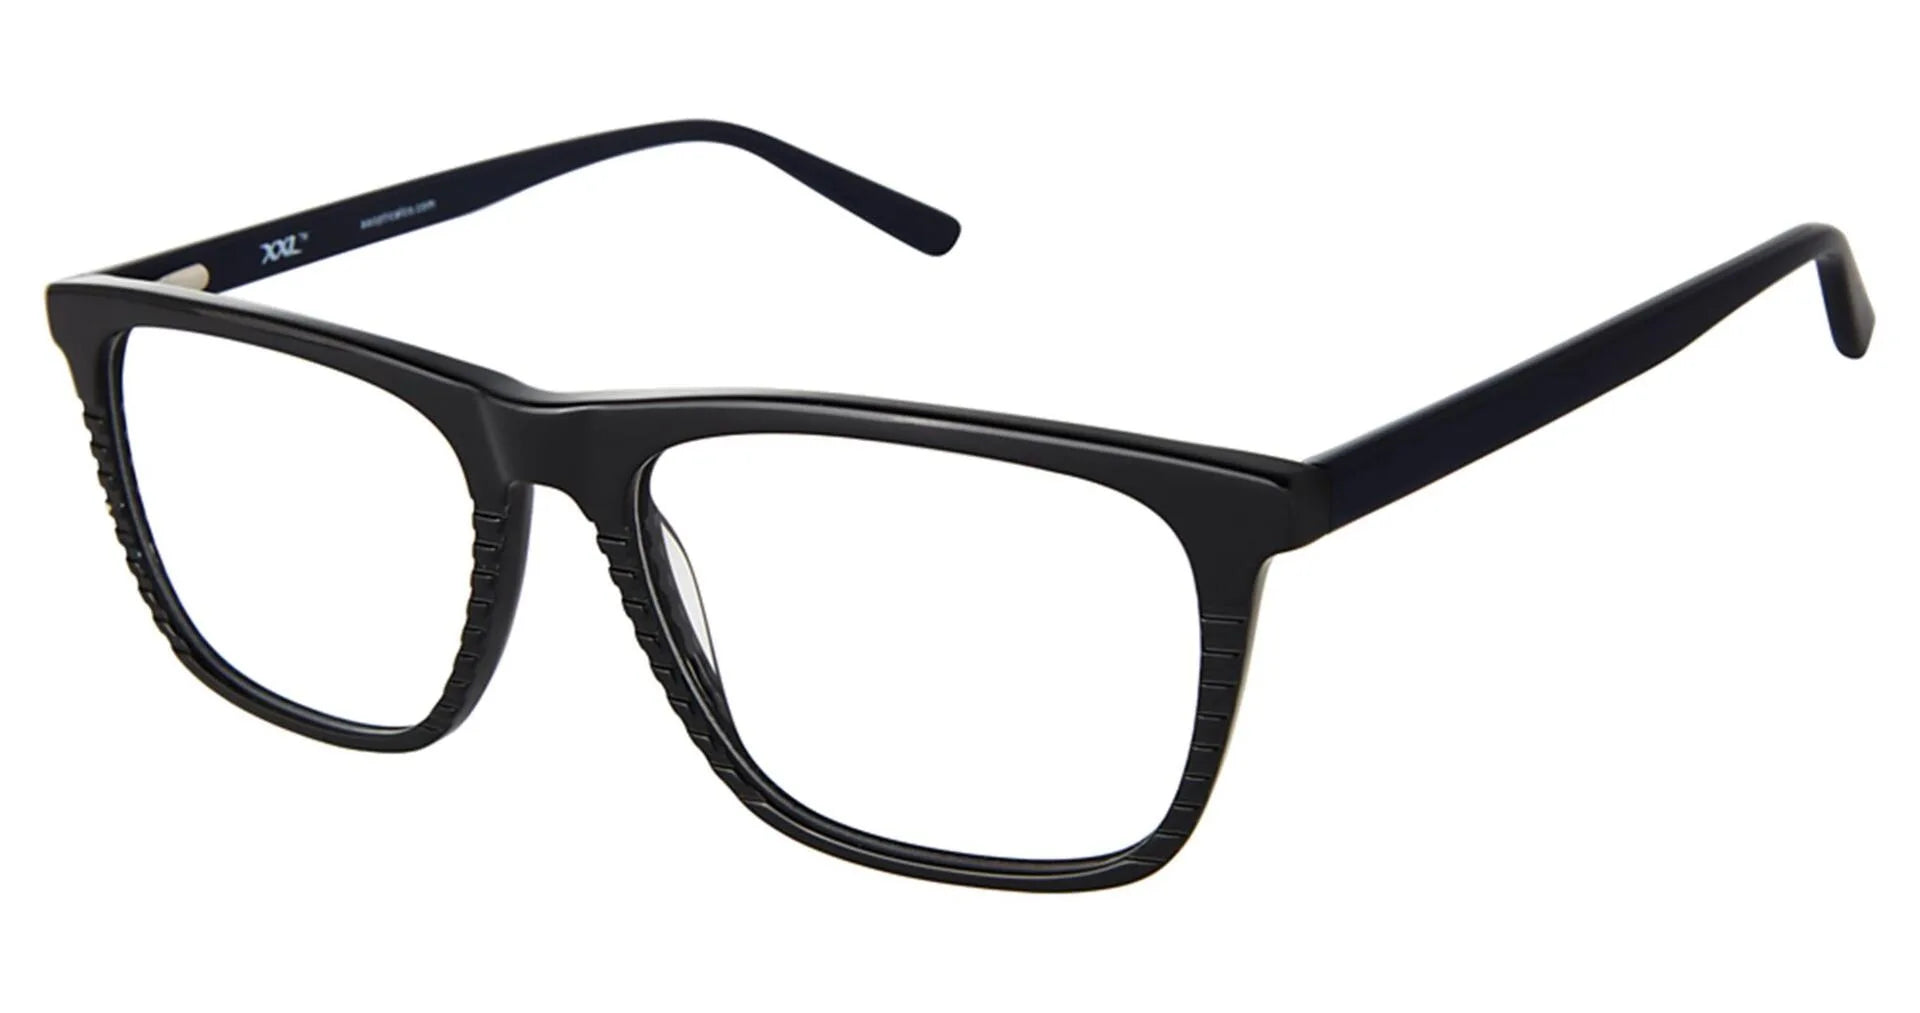 XXL Eyewear Pelican Eyeglasses Black